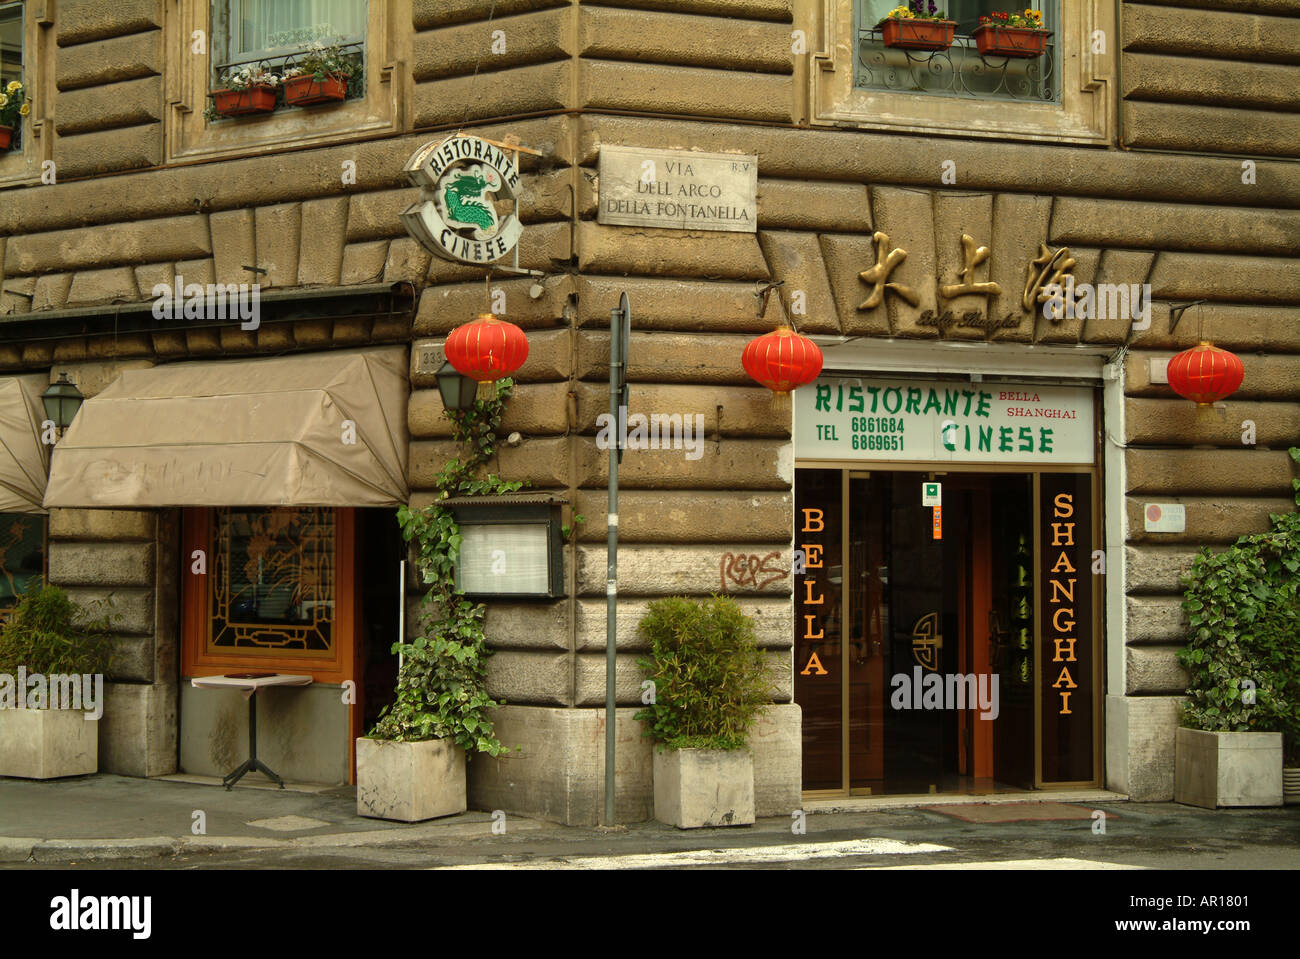 Chinese restaurant, Via dell'Arco della Fontanella, Rome, Italy, Europe Stock Photo